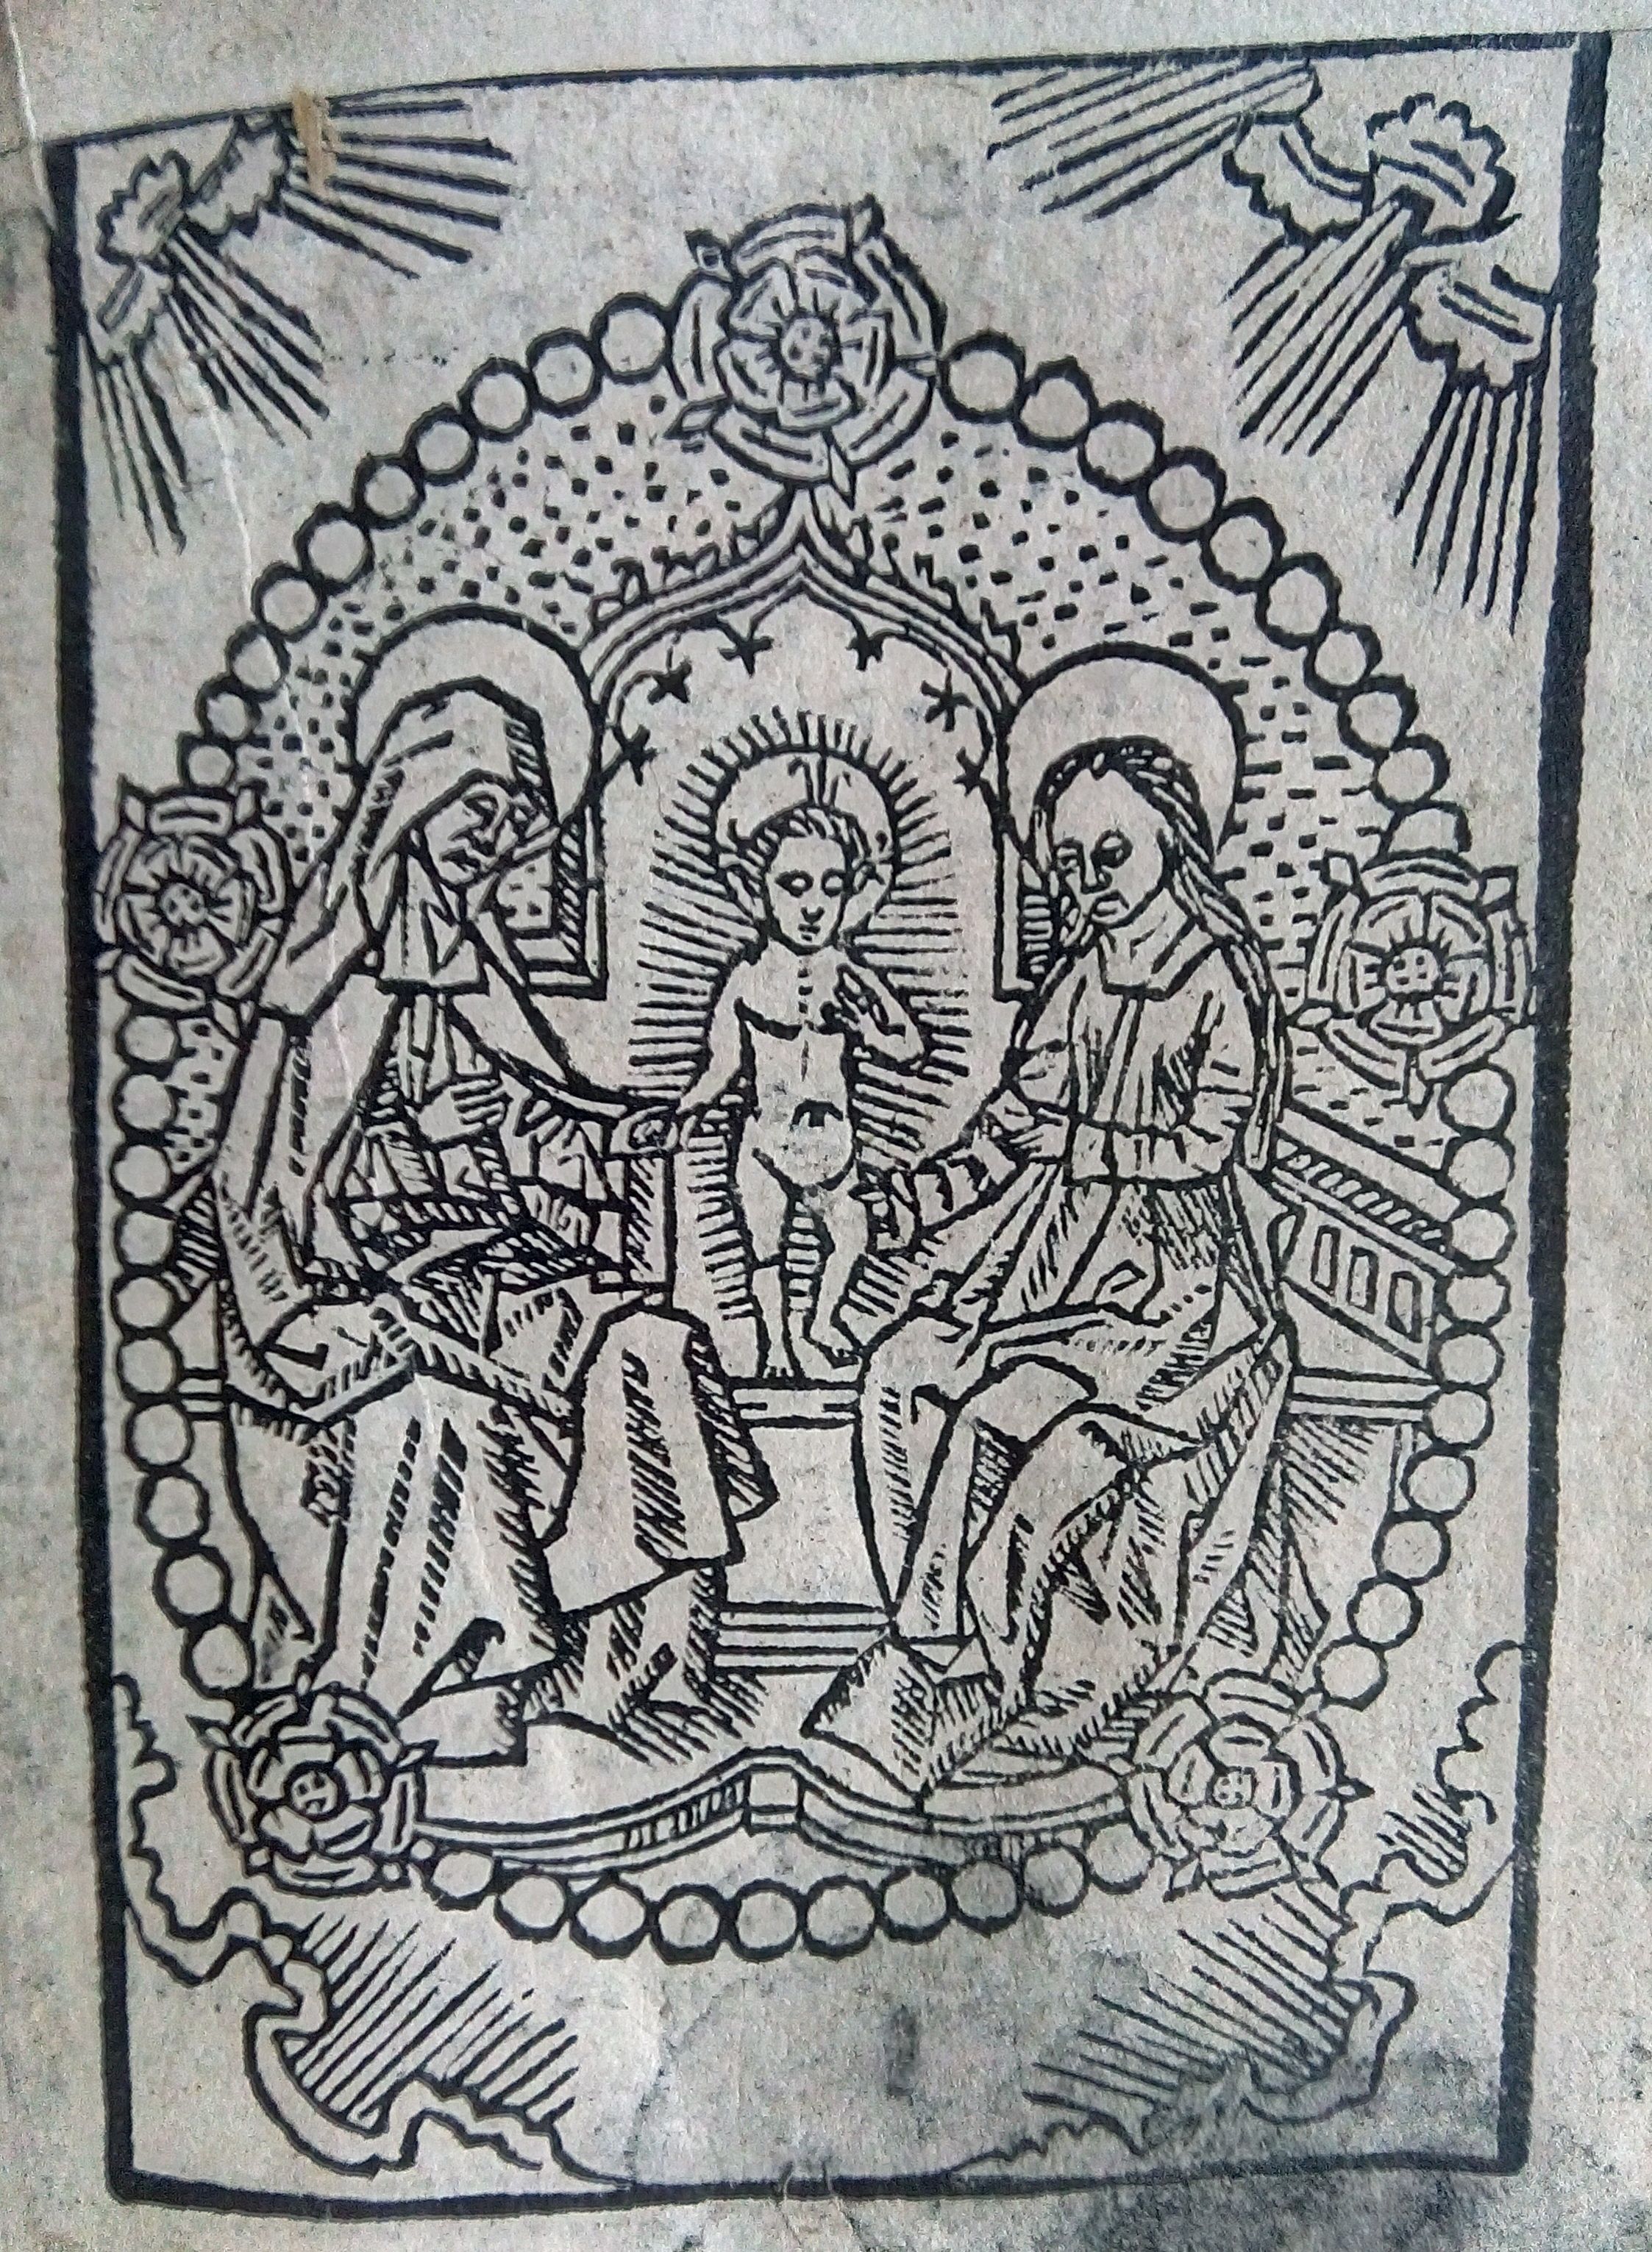 Pagina in boekje Thieman uit 1518